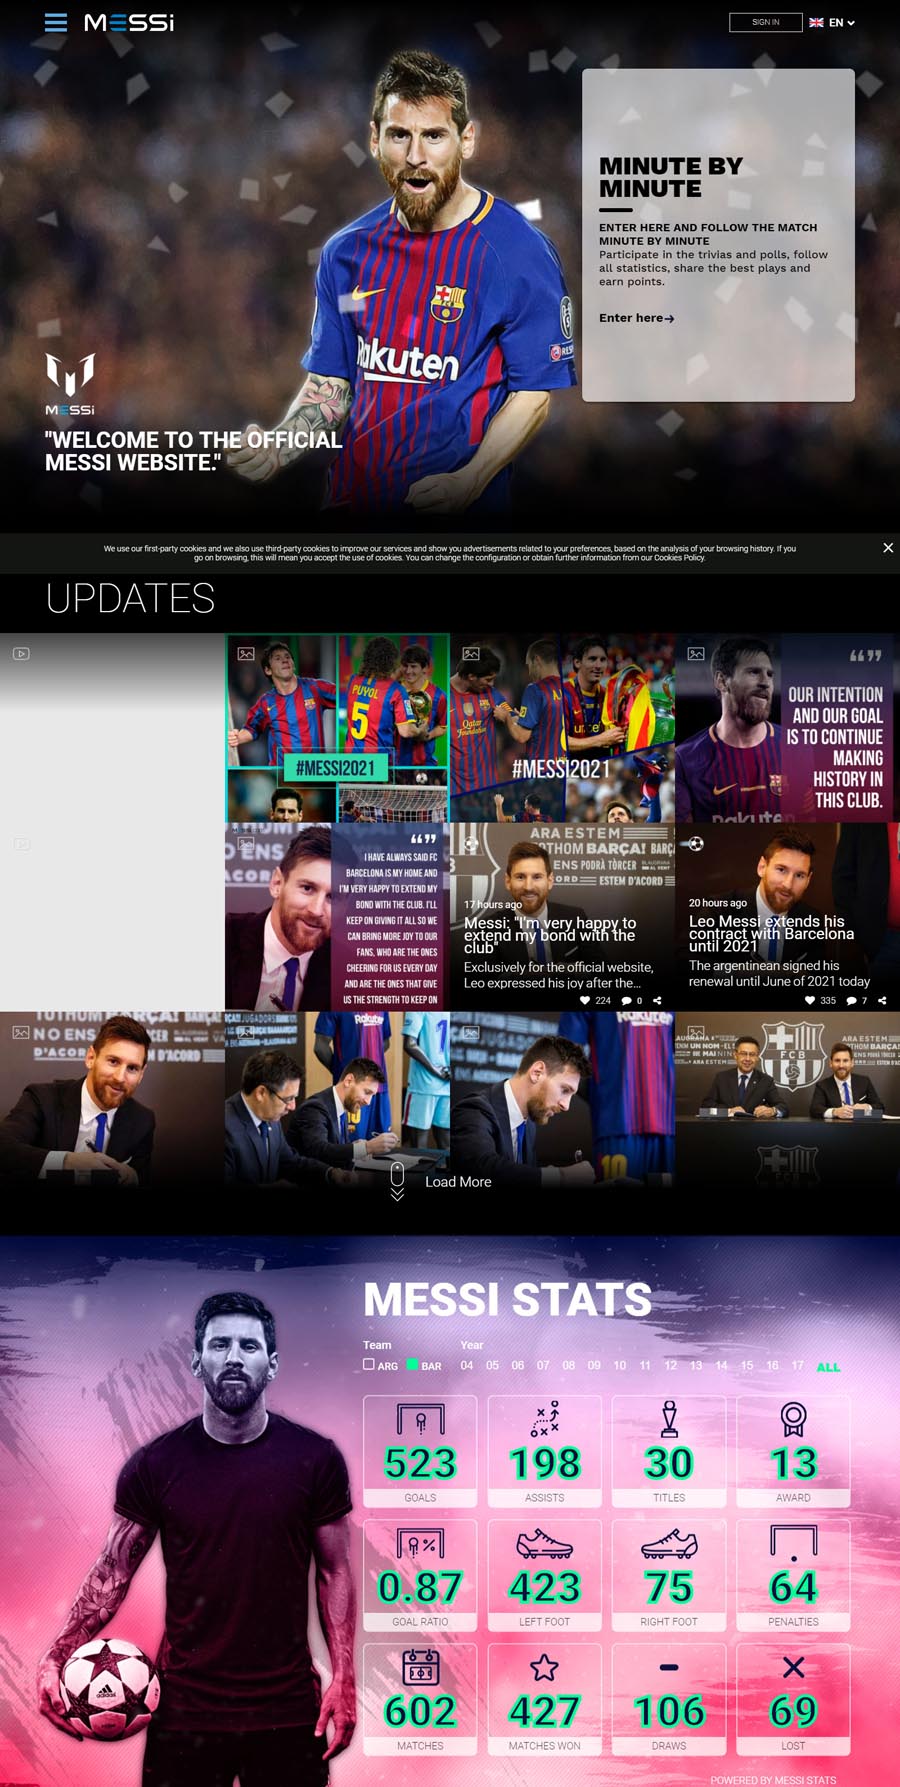 Lionel Messi Footballer Celebrity Website Design